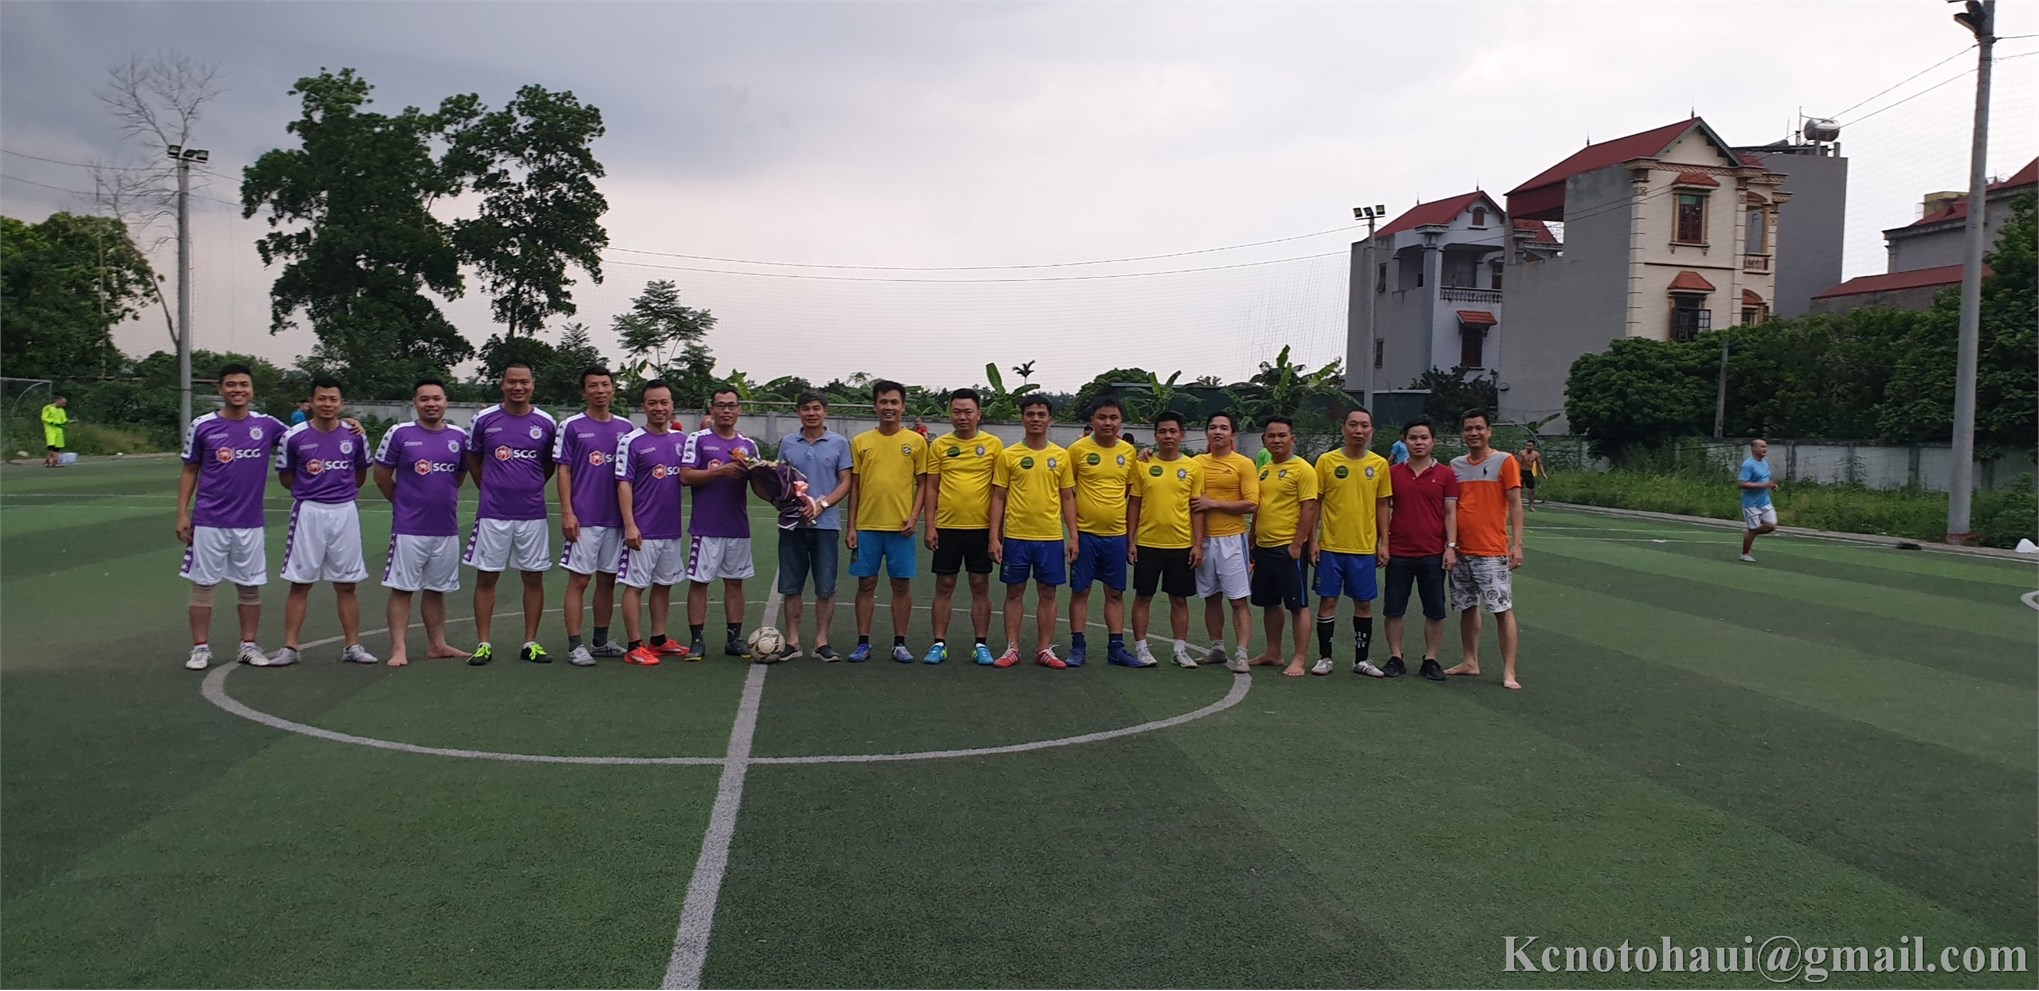 Buổi giao hữu bóng đá với đội tuyển cựu sinh viên ĐHÔTÔ Khóa 1